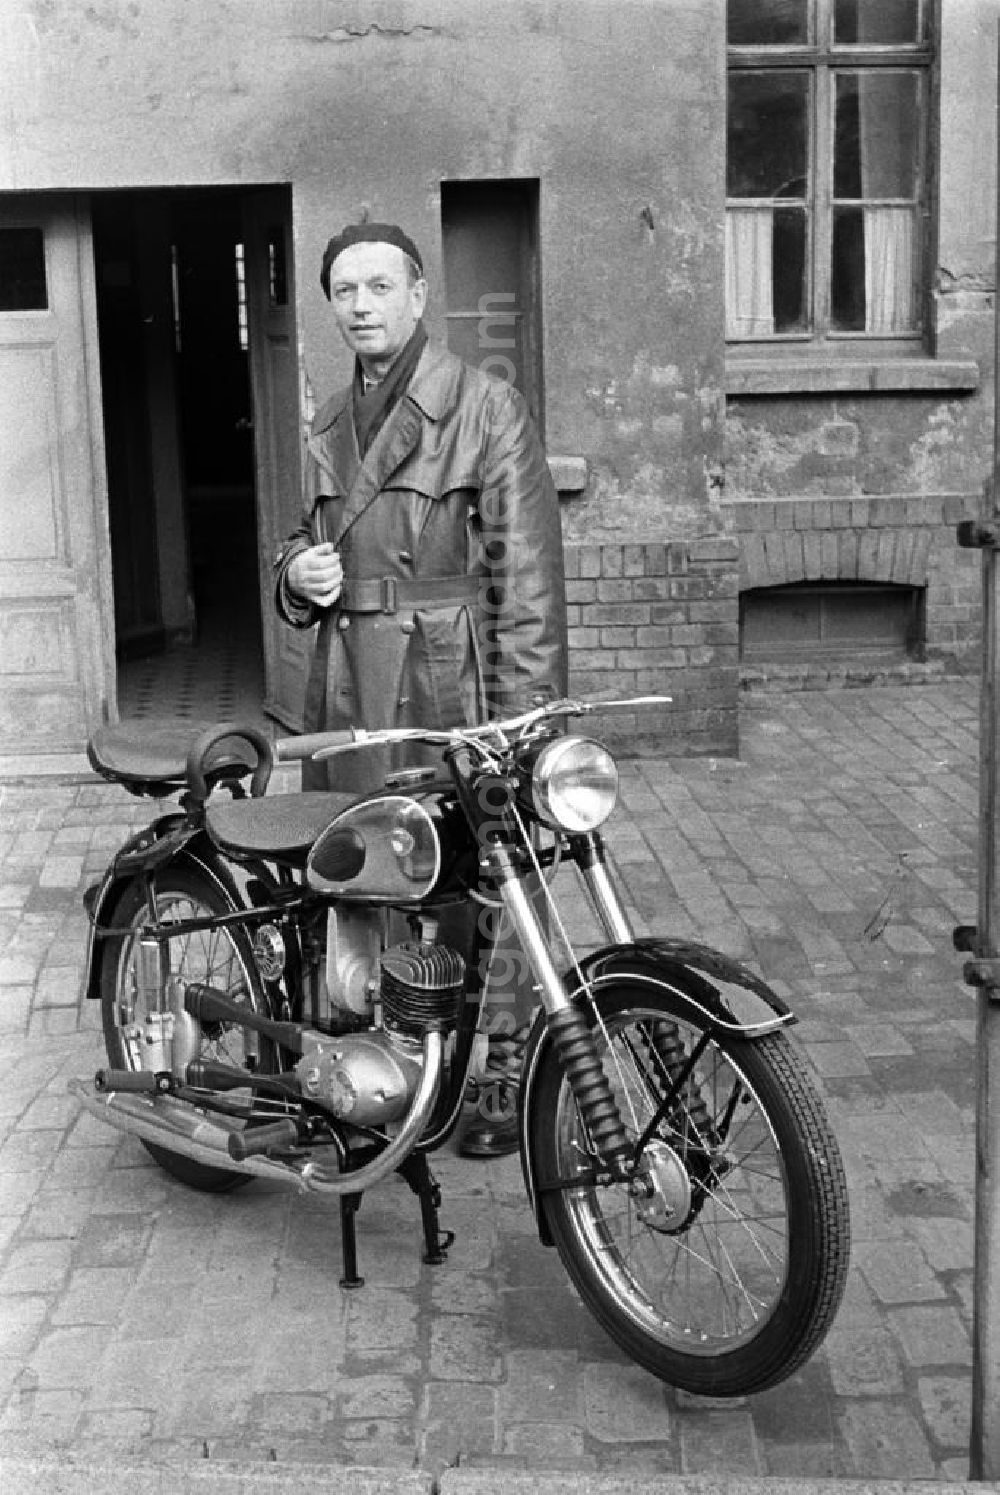 GDR picture archive: Leipzig - Ein Mann präsentiert stolz sein neues Motorrad: eine RT 125 aus dem VEB Motorradwerk Zschopau (MZ). Die RT 125 wurde von 1935 bis 1965 von verschiedenen Herstellern produziert und gilt als eines der meistgebauten Motorräder der Welt. In der DDR war sie das vergleichsweise günstigste zulassungspflichtige Kraftfahrzeug.